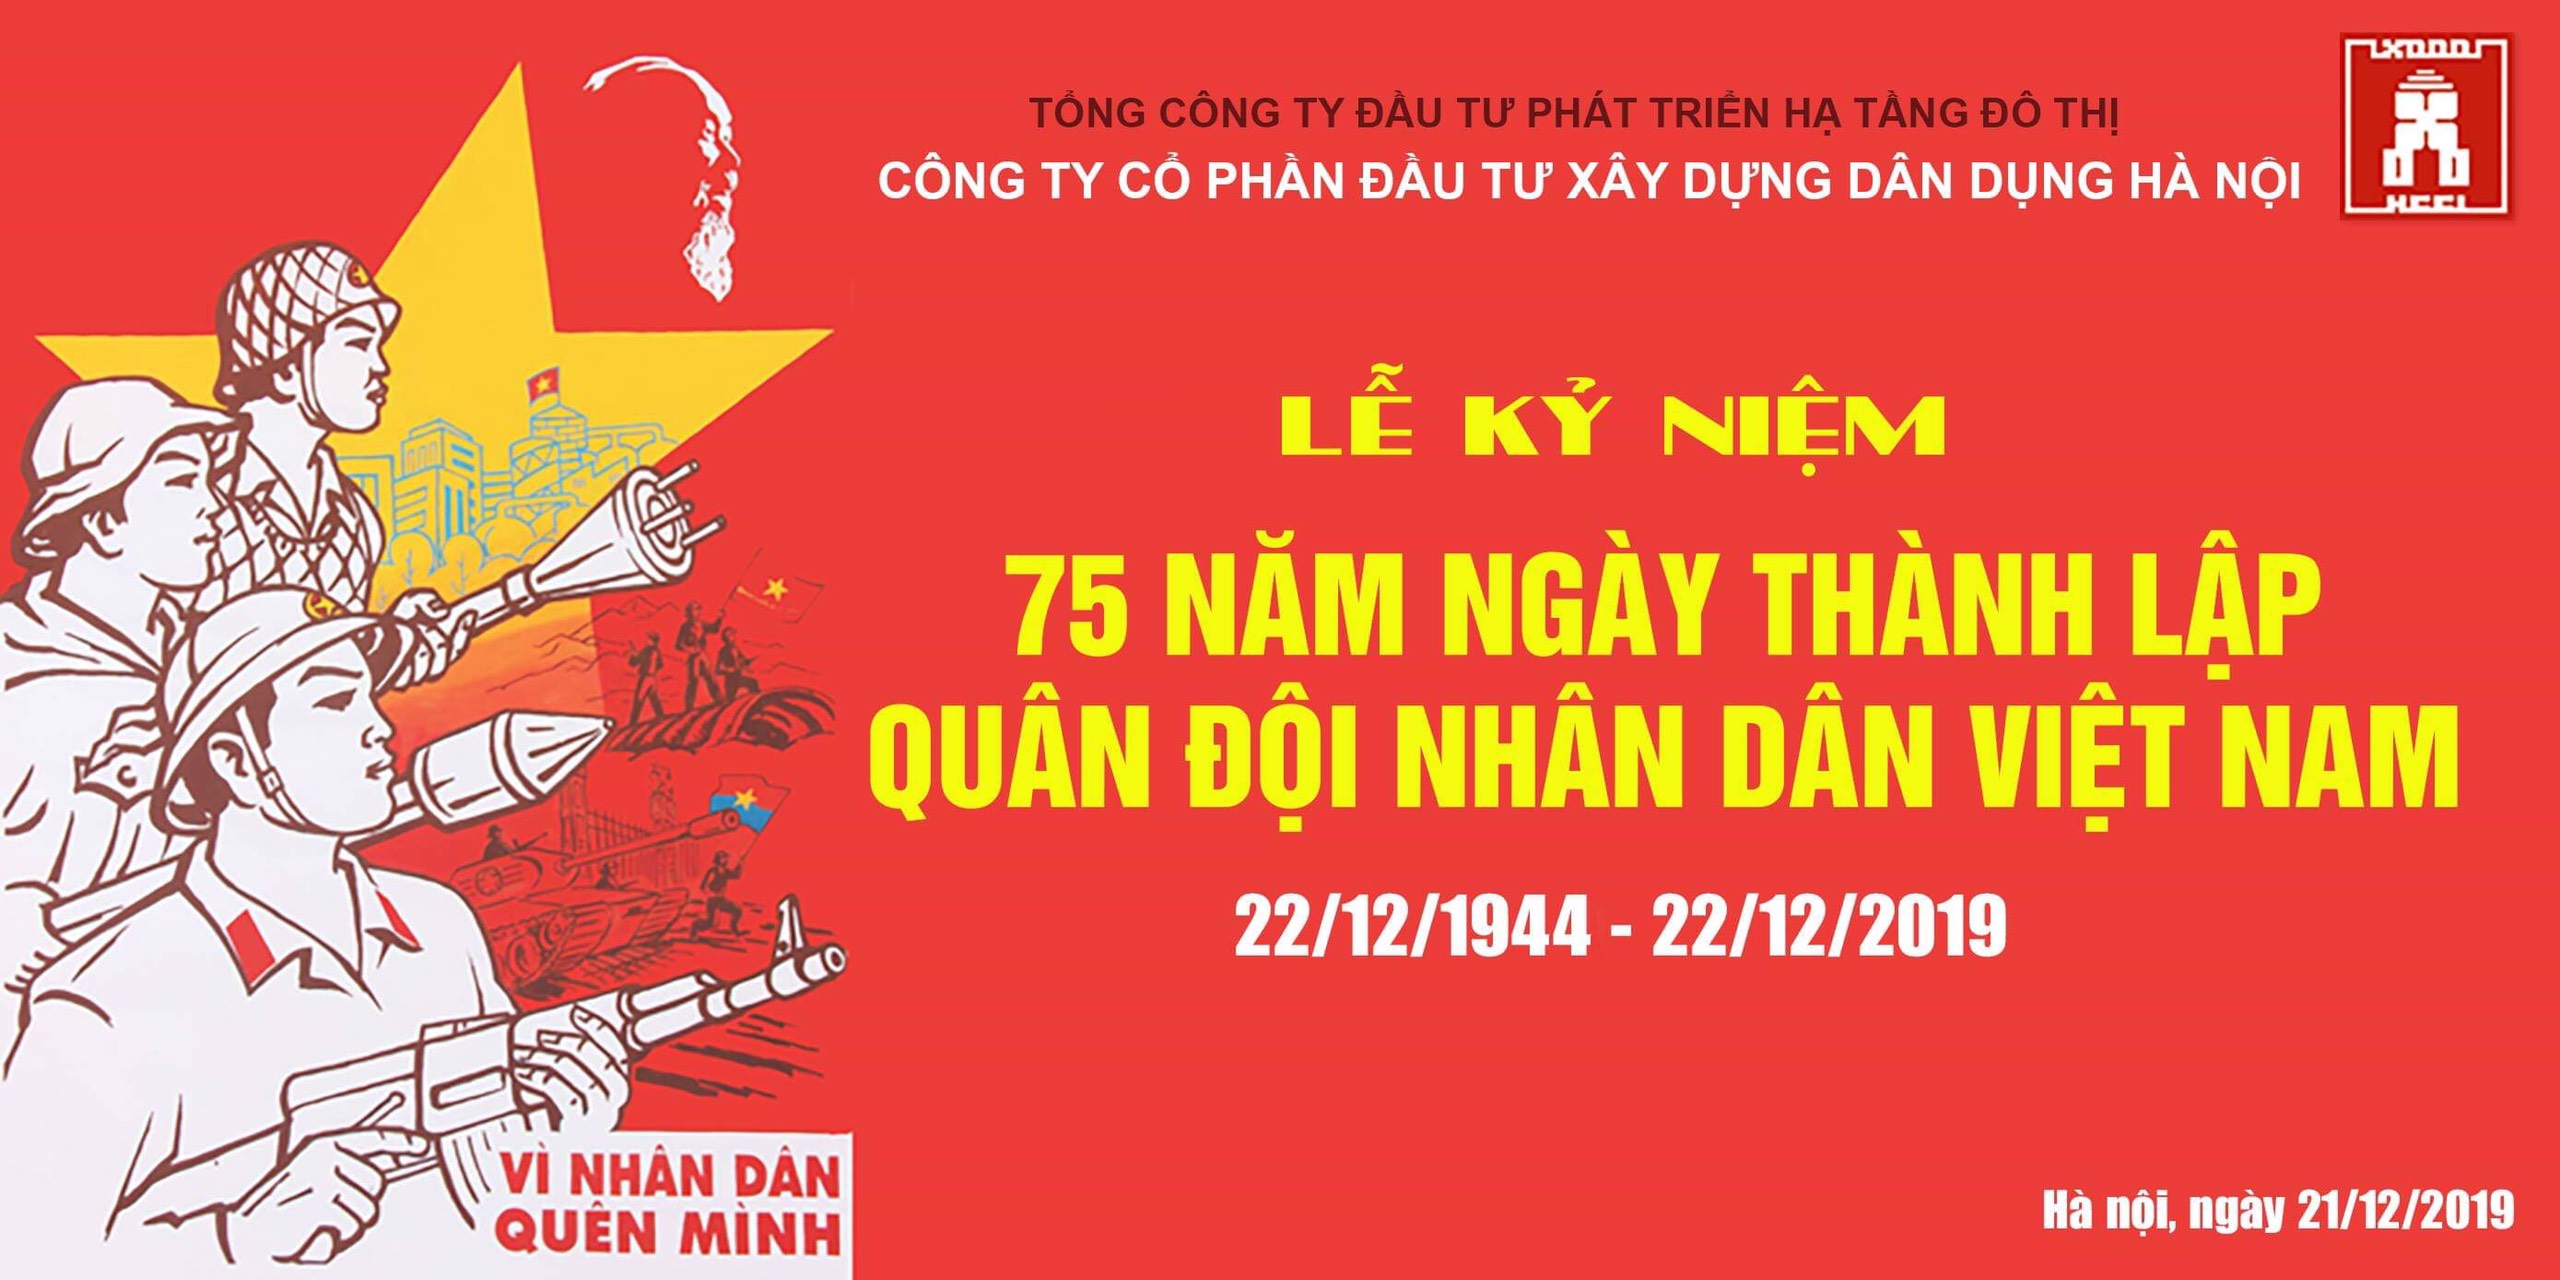 Kỷ niệm 75 năm ngày thành lập Quân đội nhân dân Việt Nam